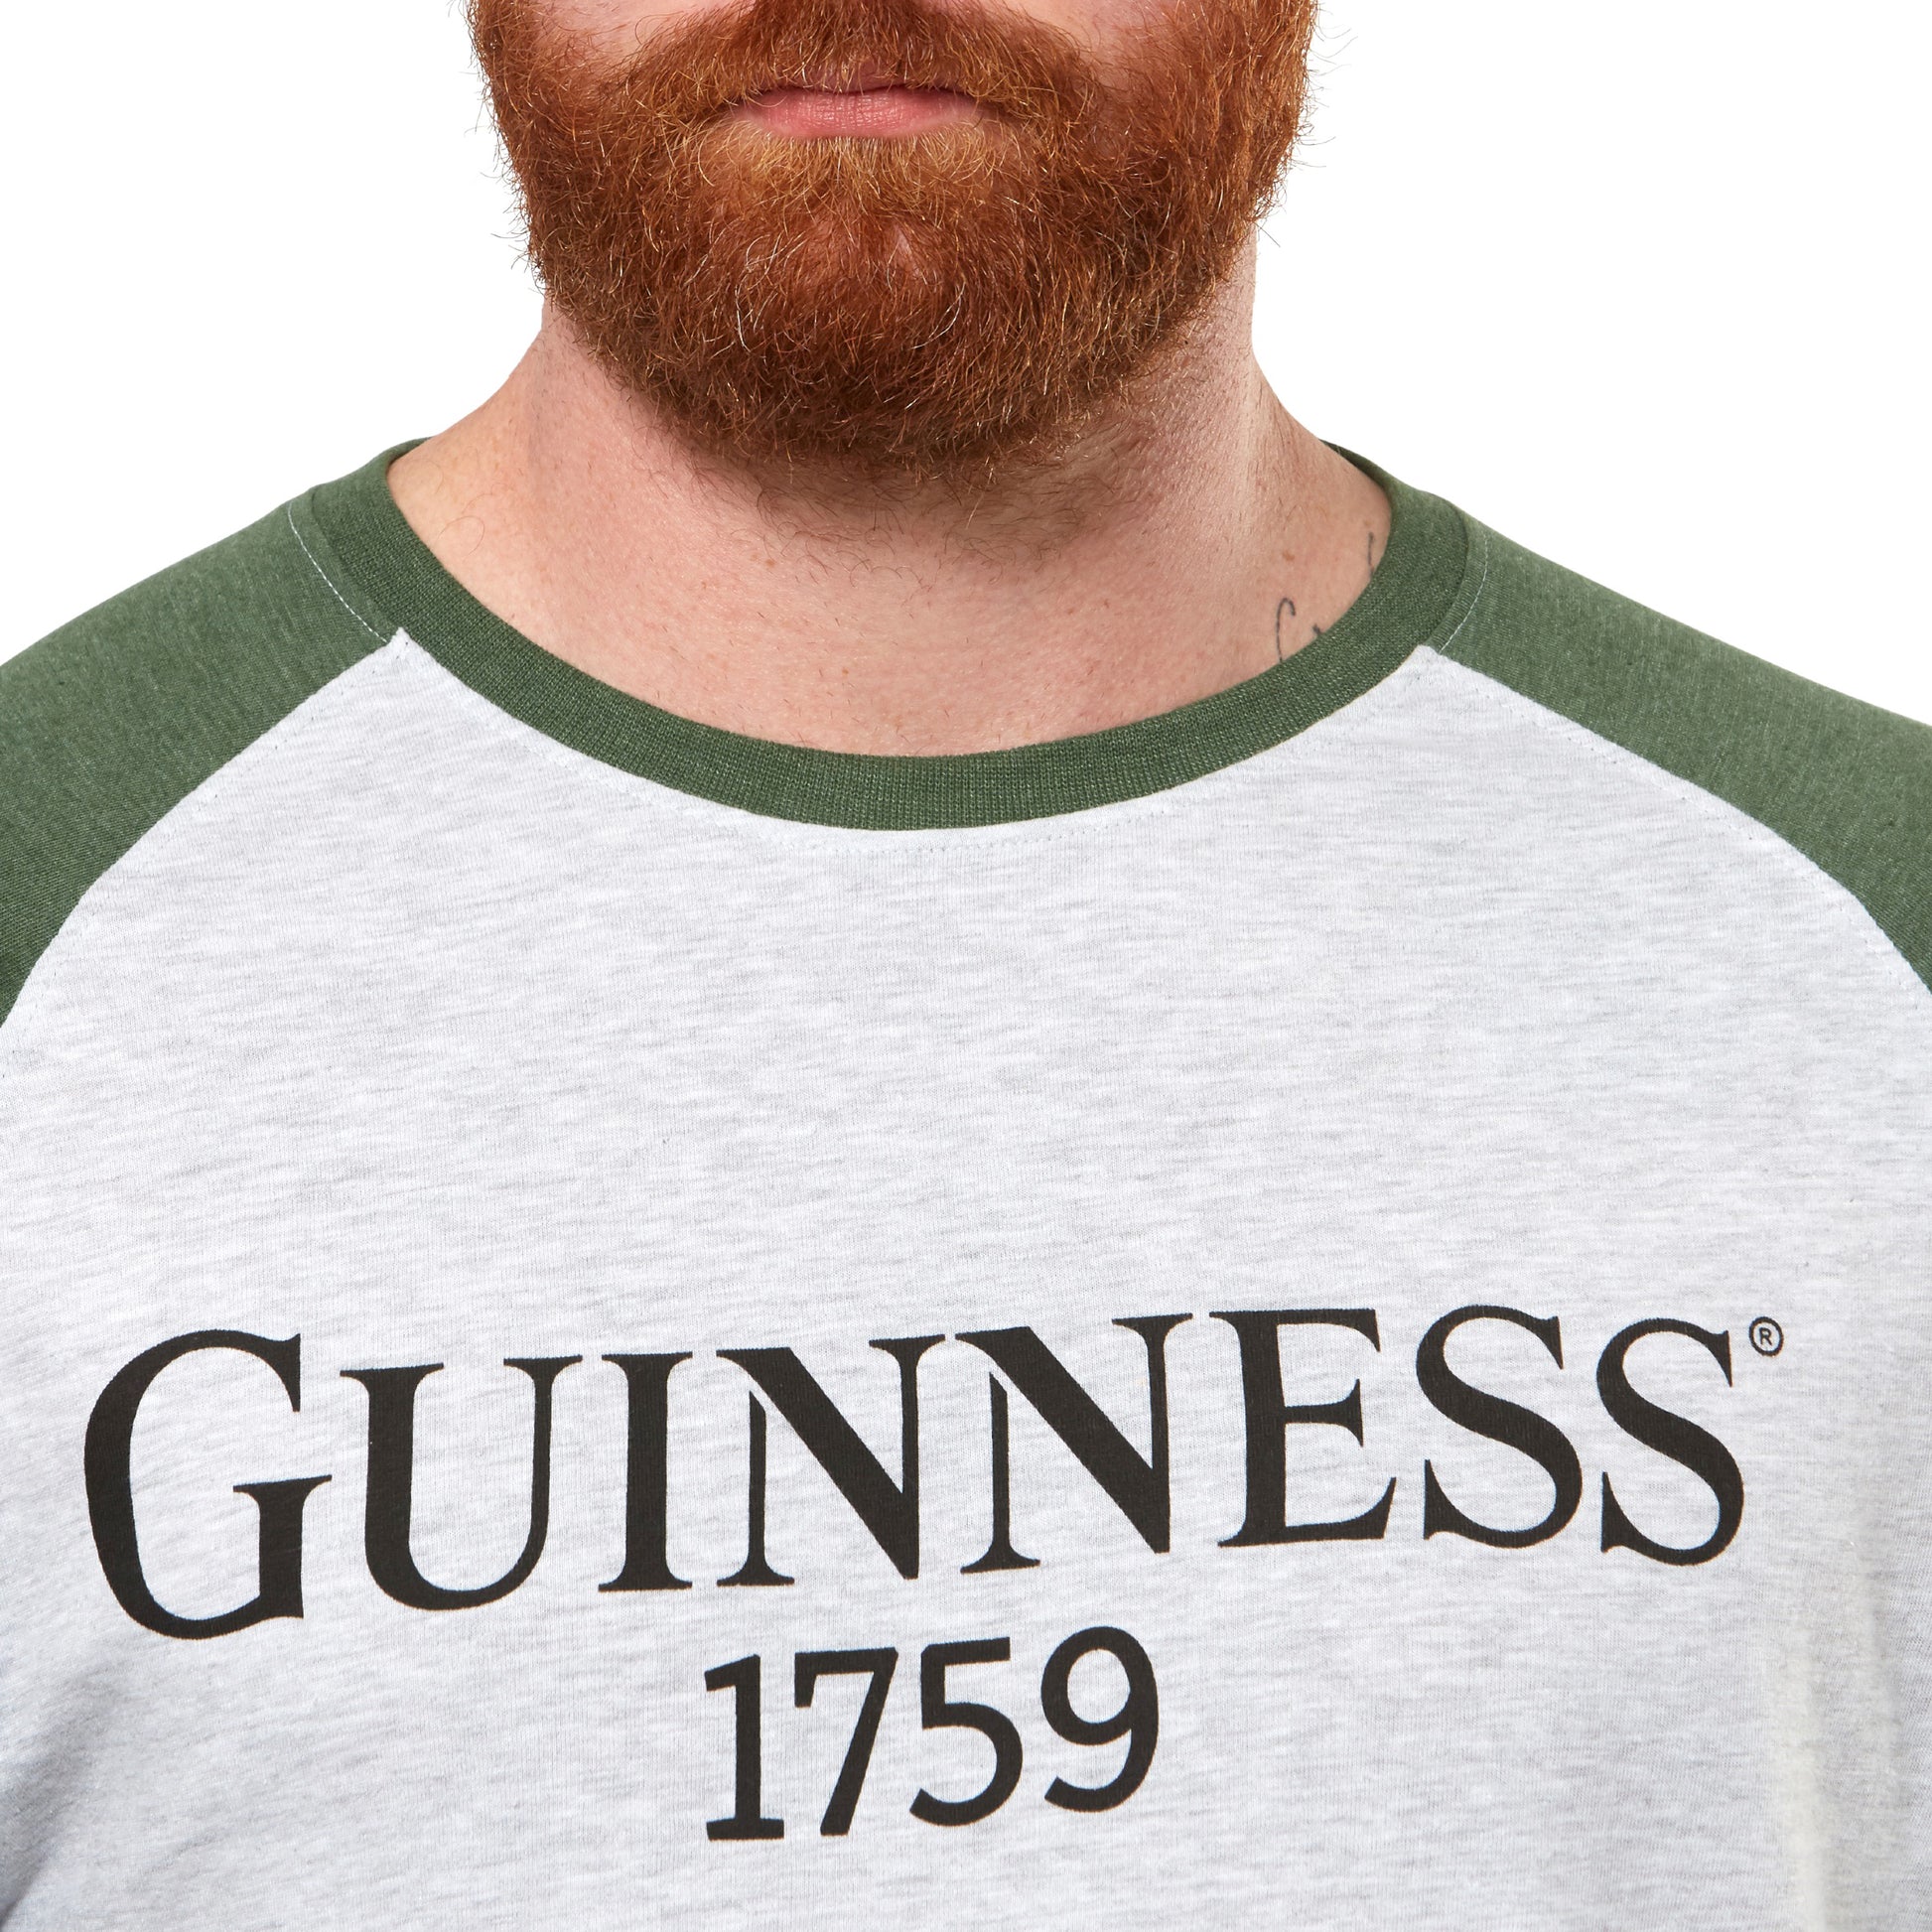 A man with a beard is wearing a Guinness baseball t-shirt.